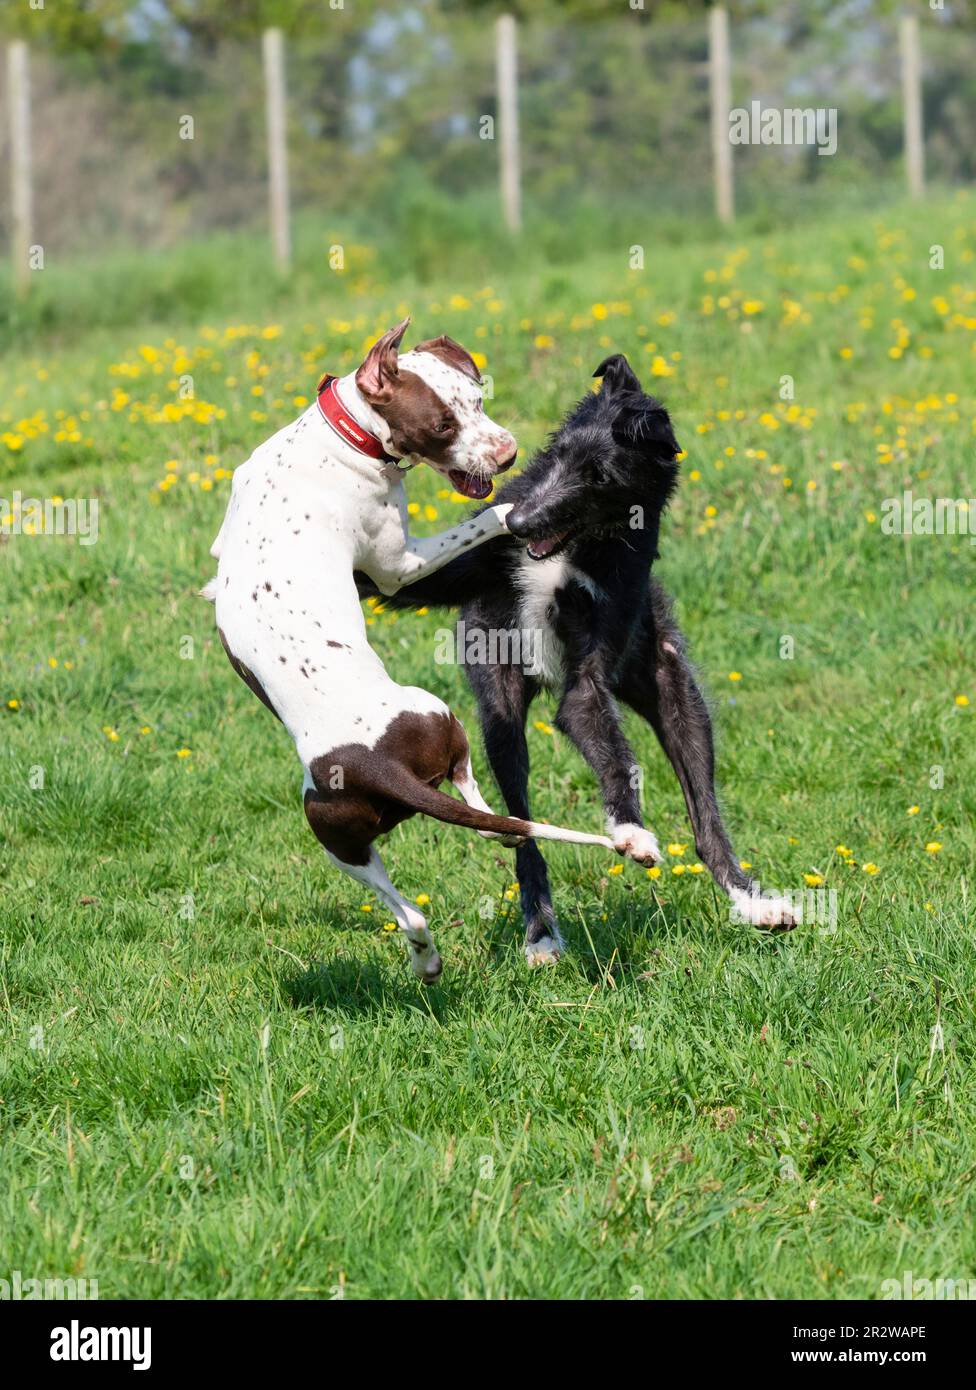 Narla, un Dalmation x Bull Terrier, y Sampson, un deerhound x greyhound, juegan a pelear en un prado del Reino Unido Foto de stock